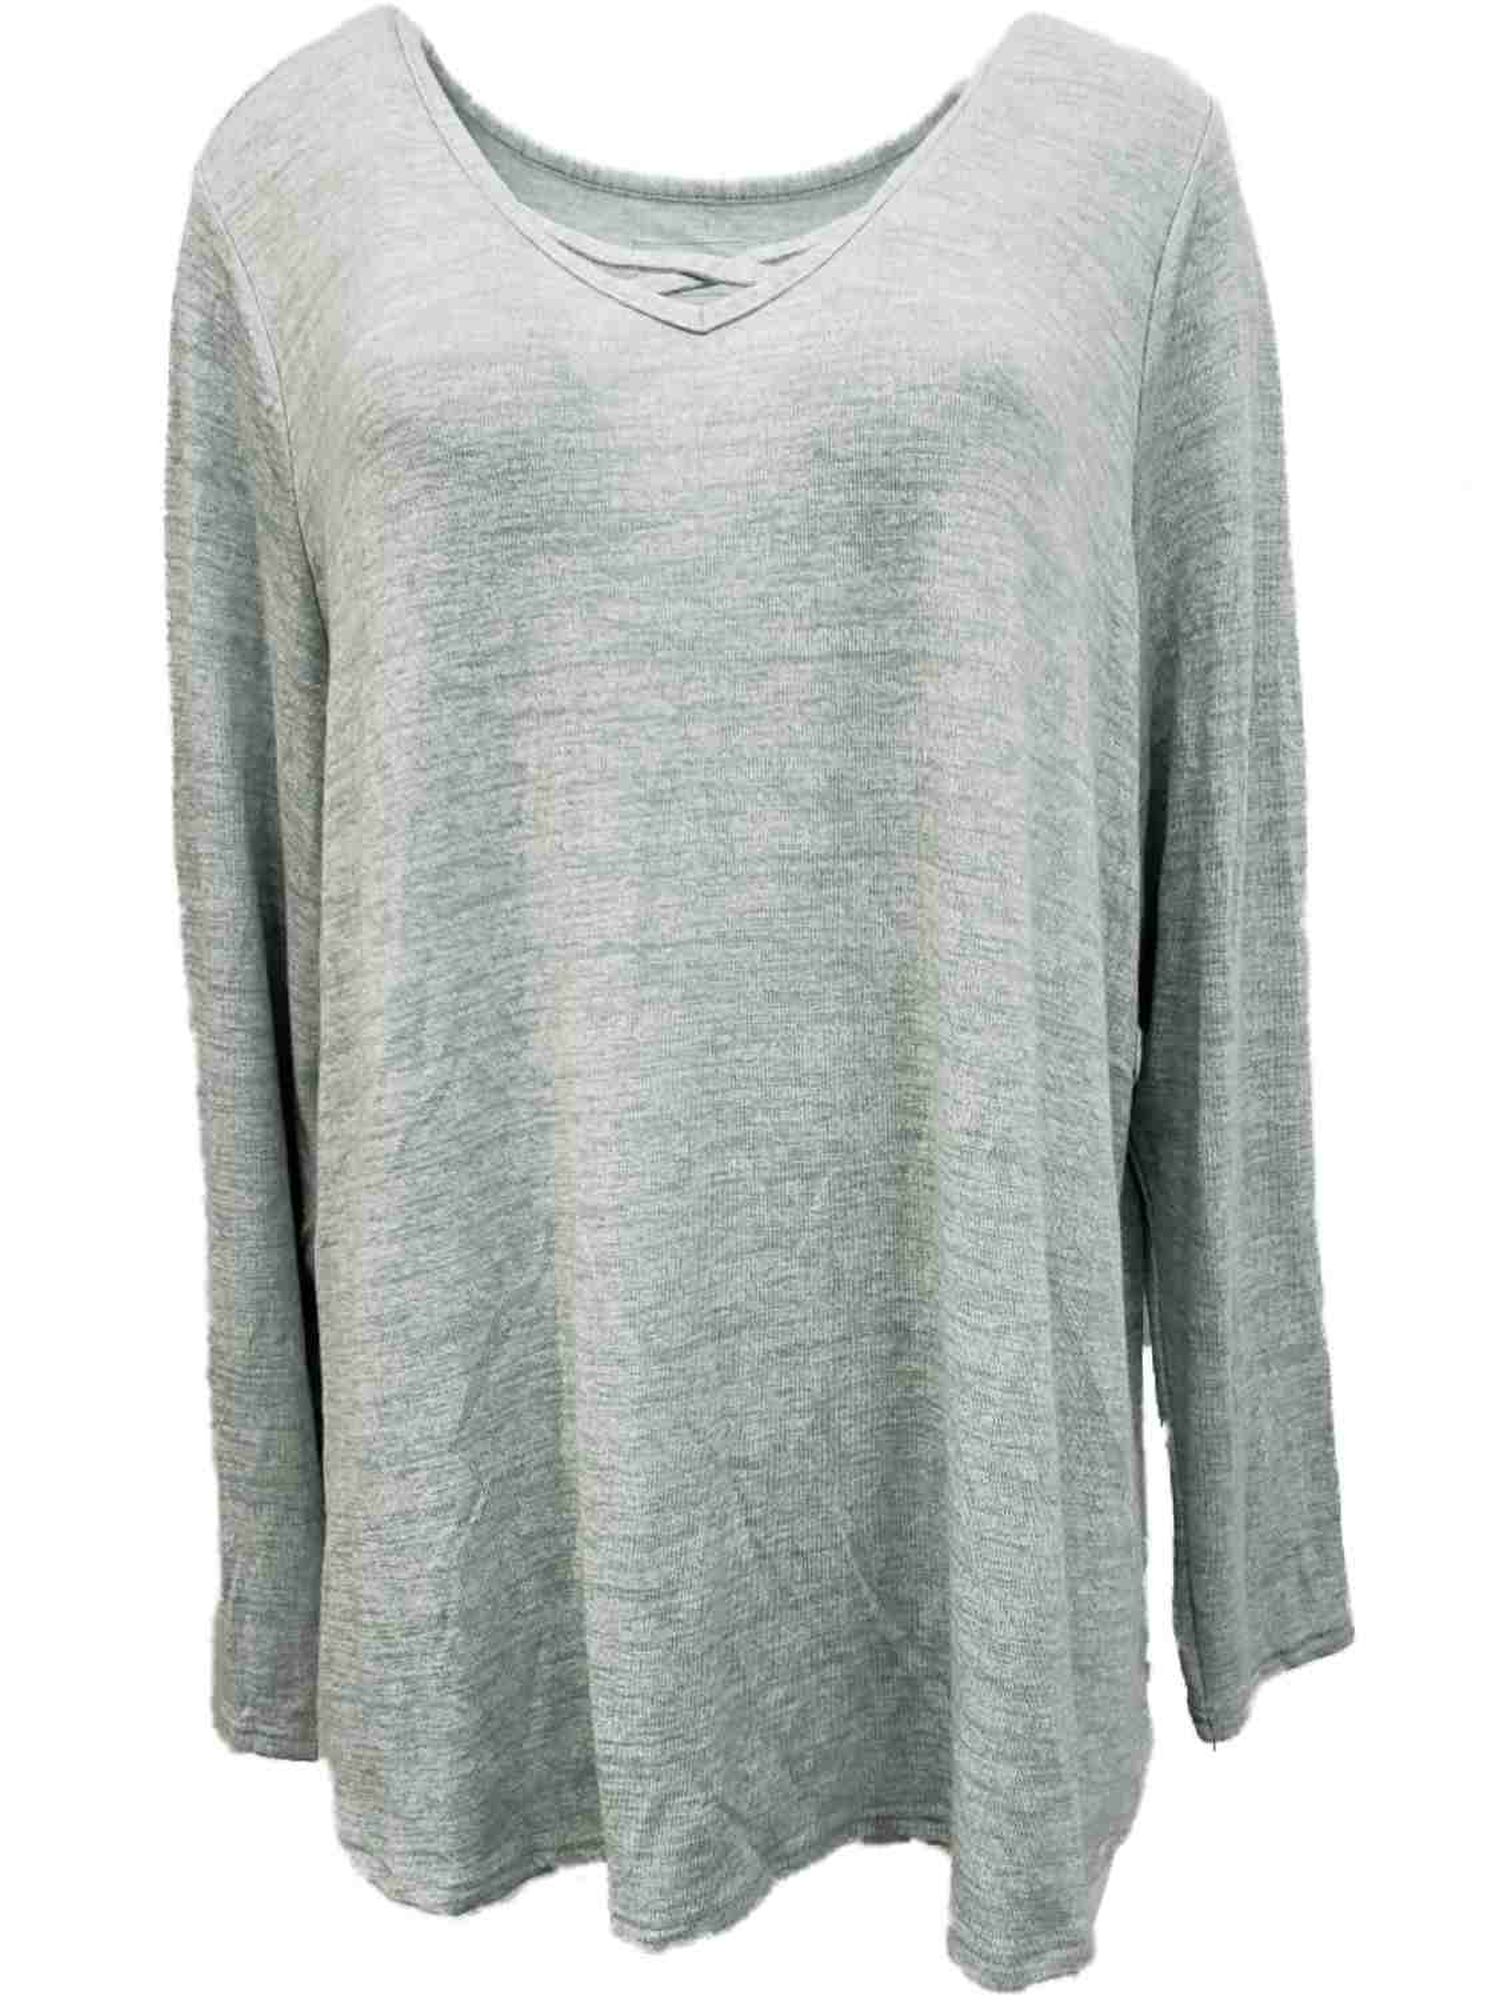 Sonoma Womens Plus Light Seafoam Green Soft Long Sleeve Lightweight Sweater Shirt